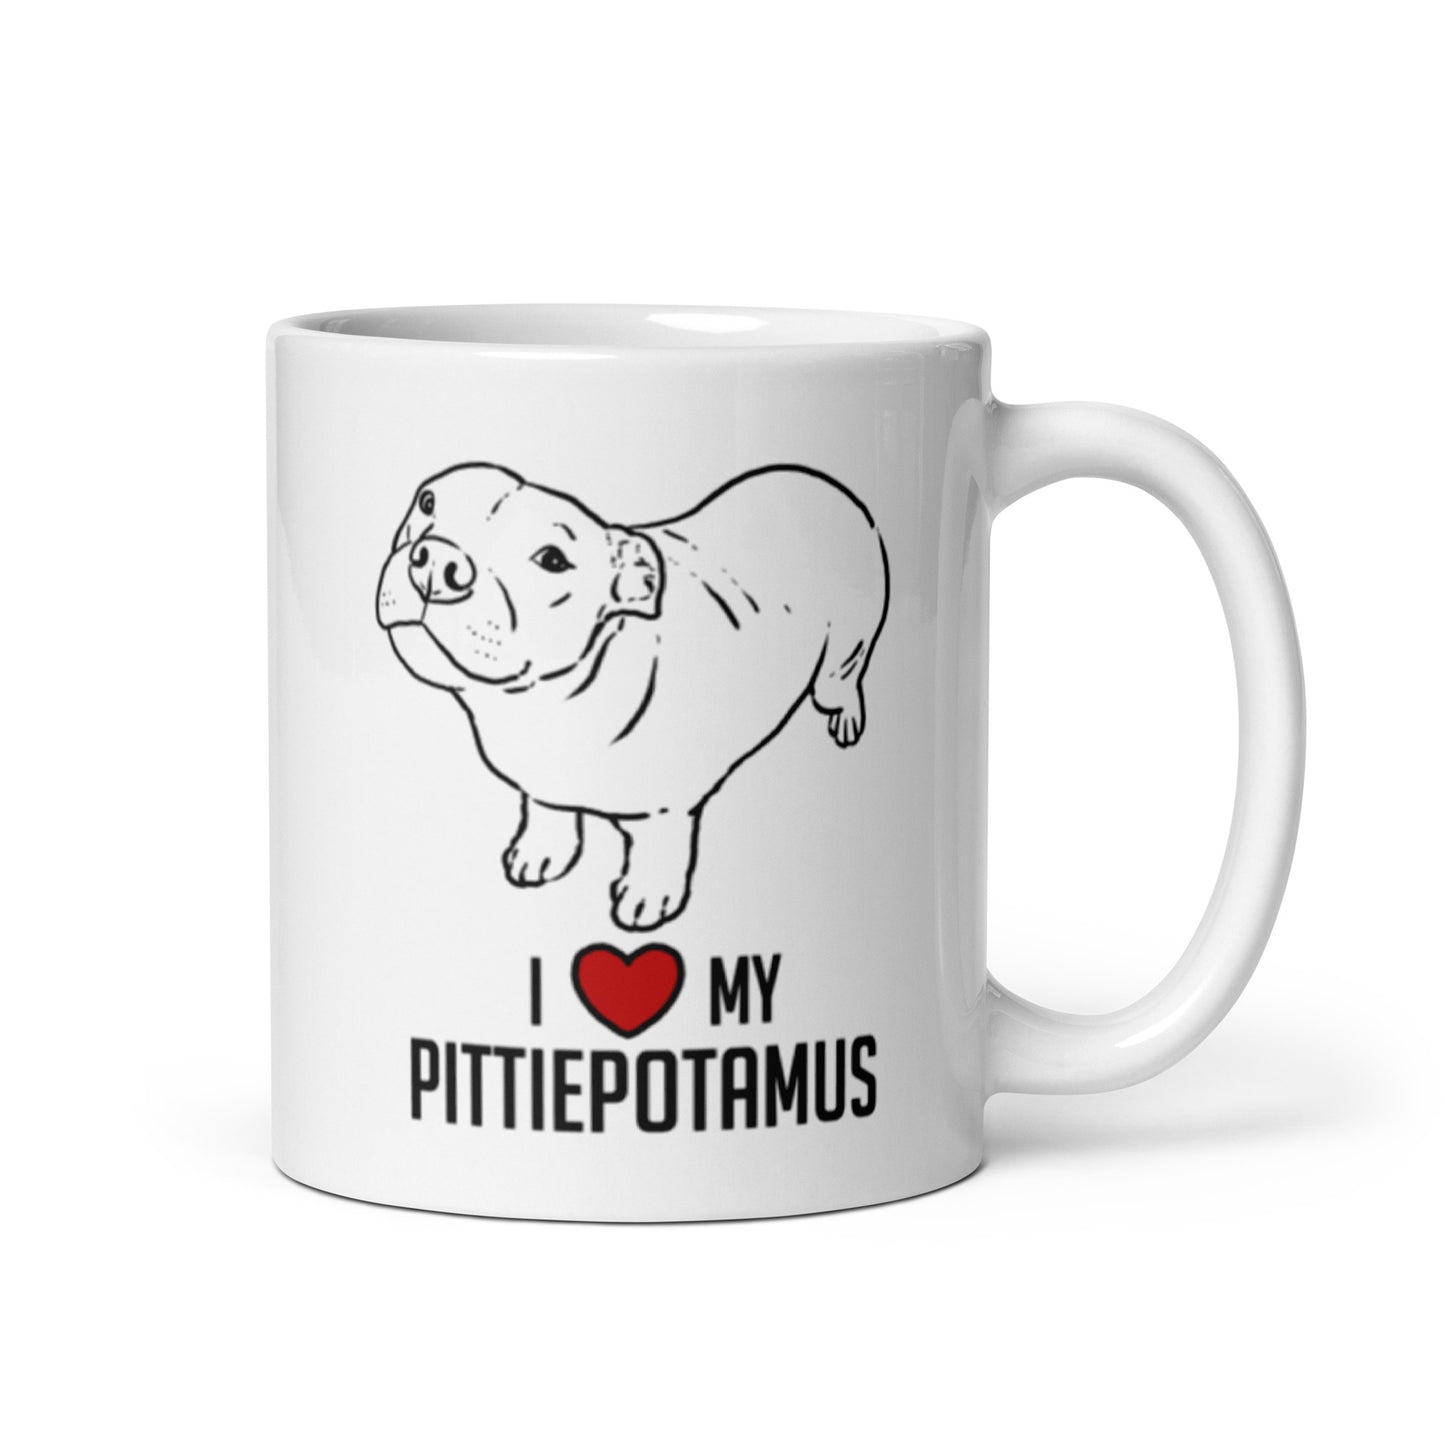 Pittiepotamus Mug